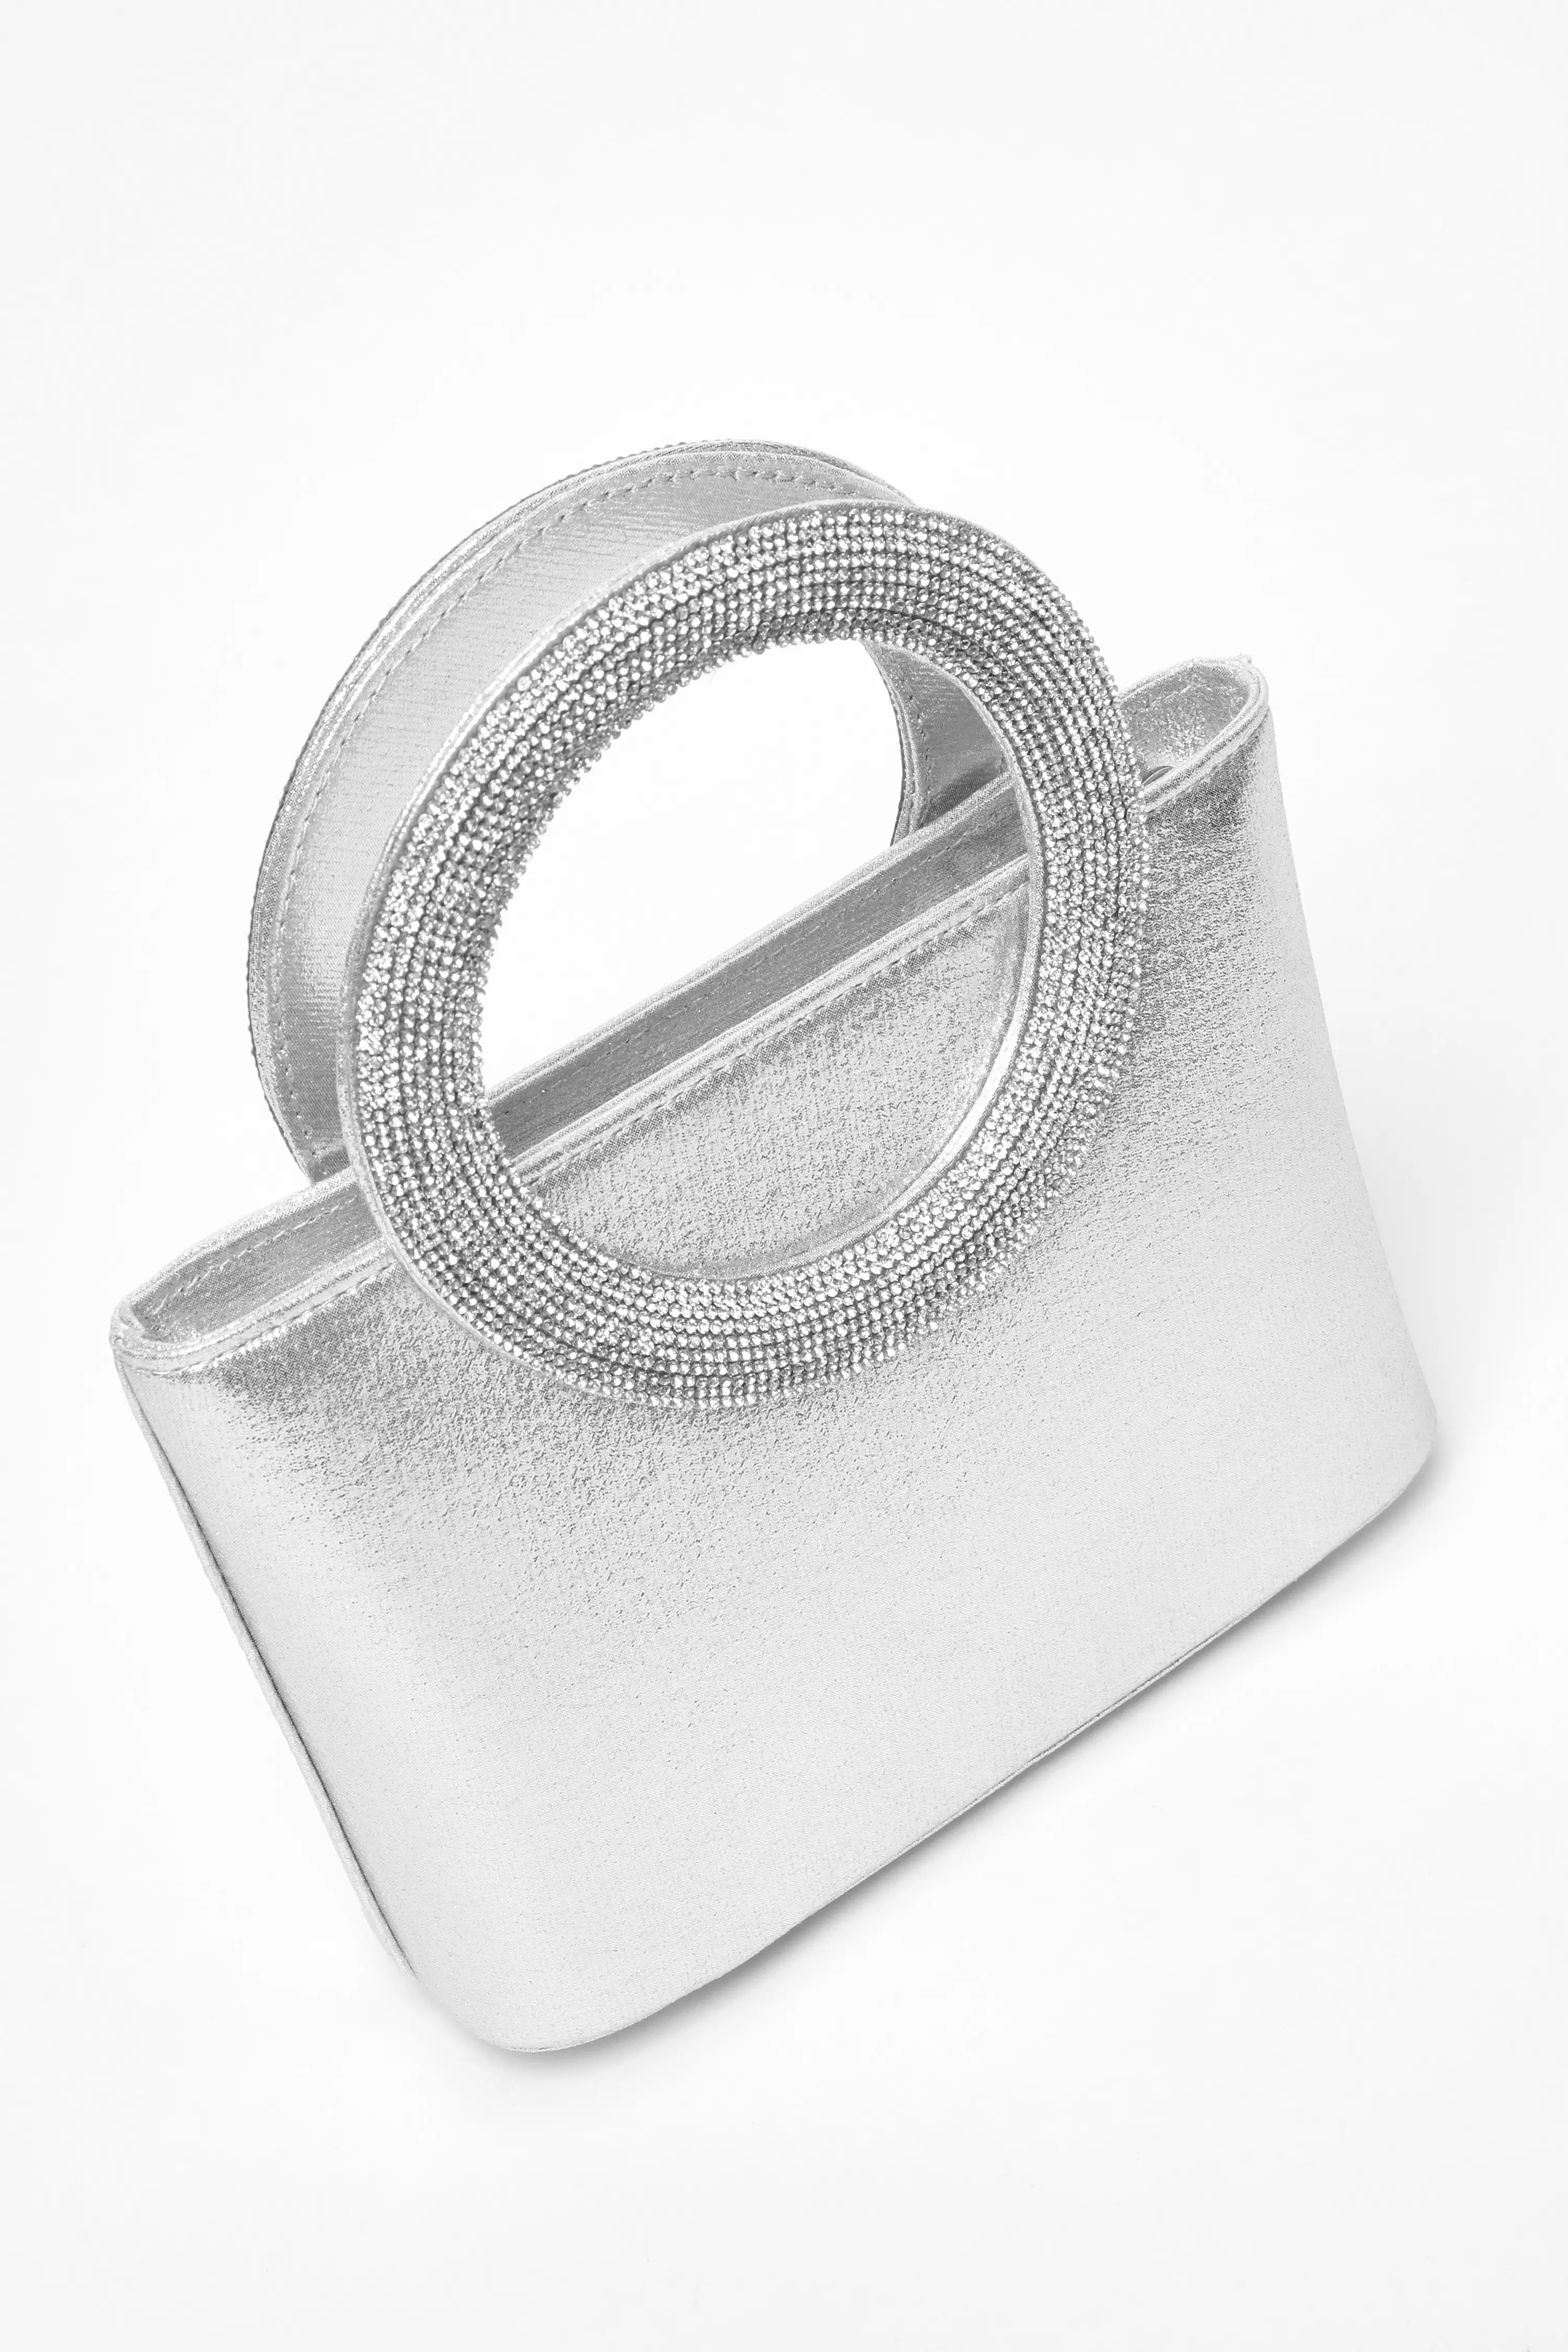  Silver Diamante Top Handle Bag